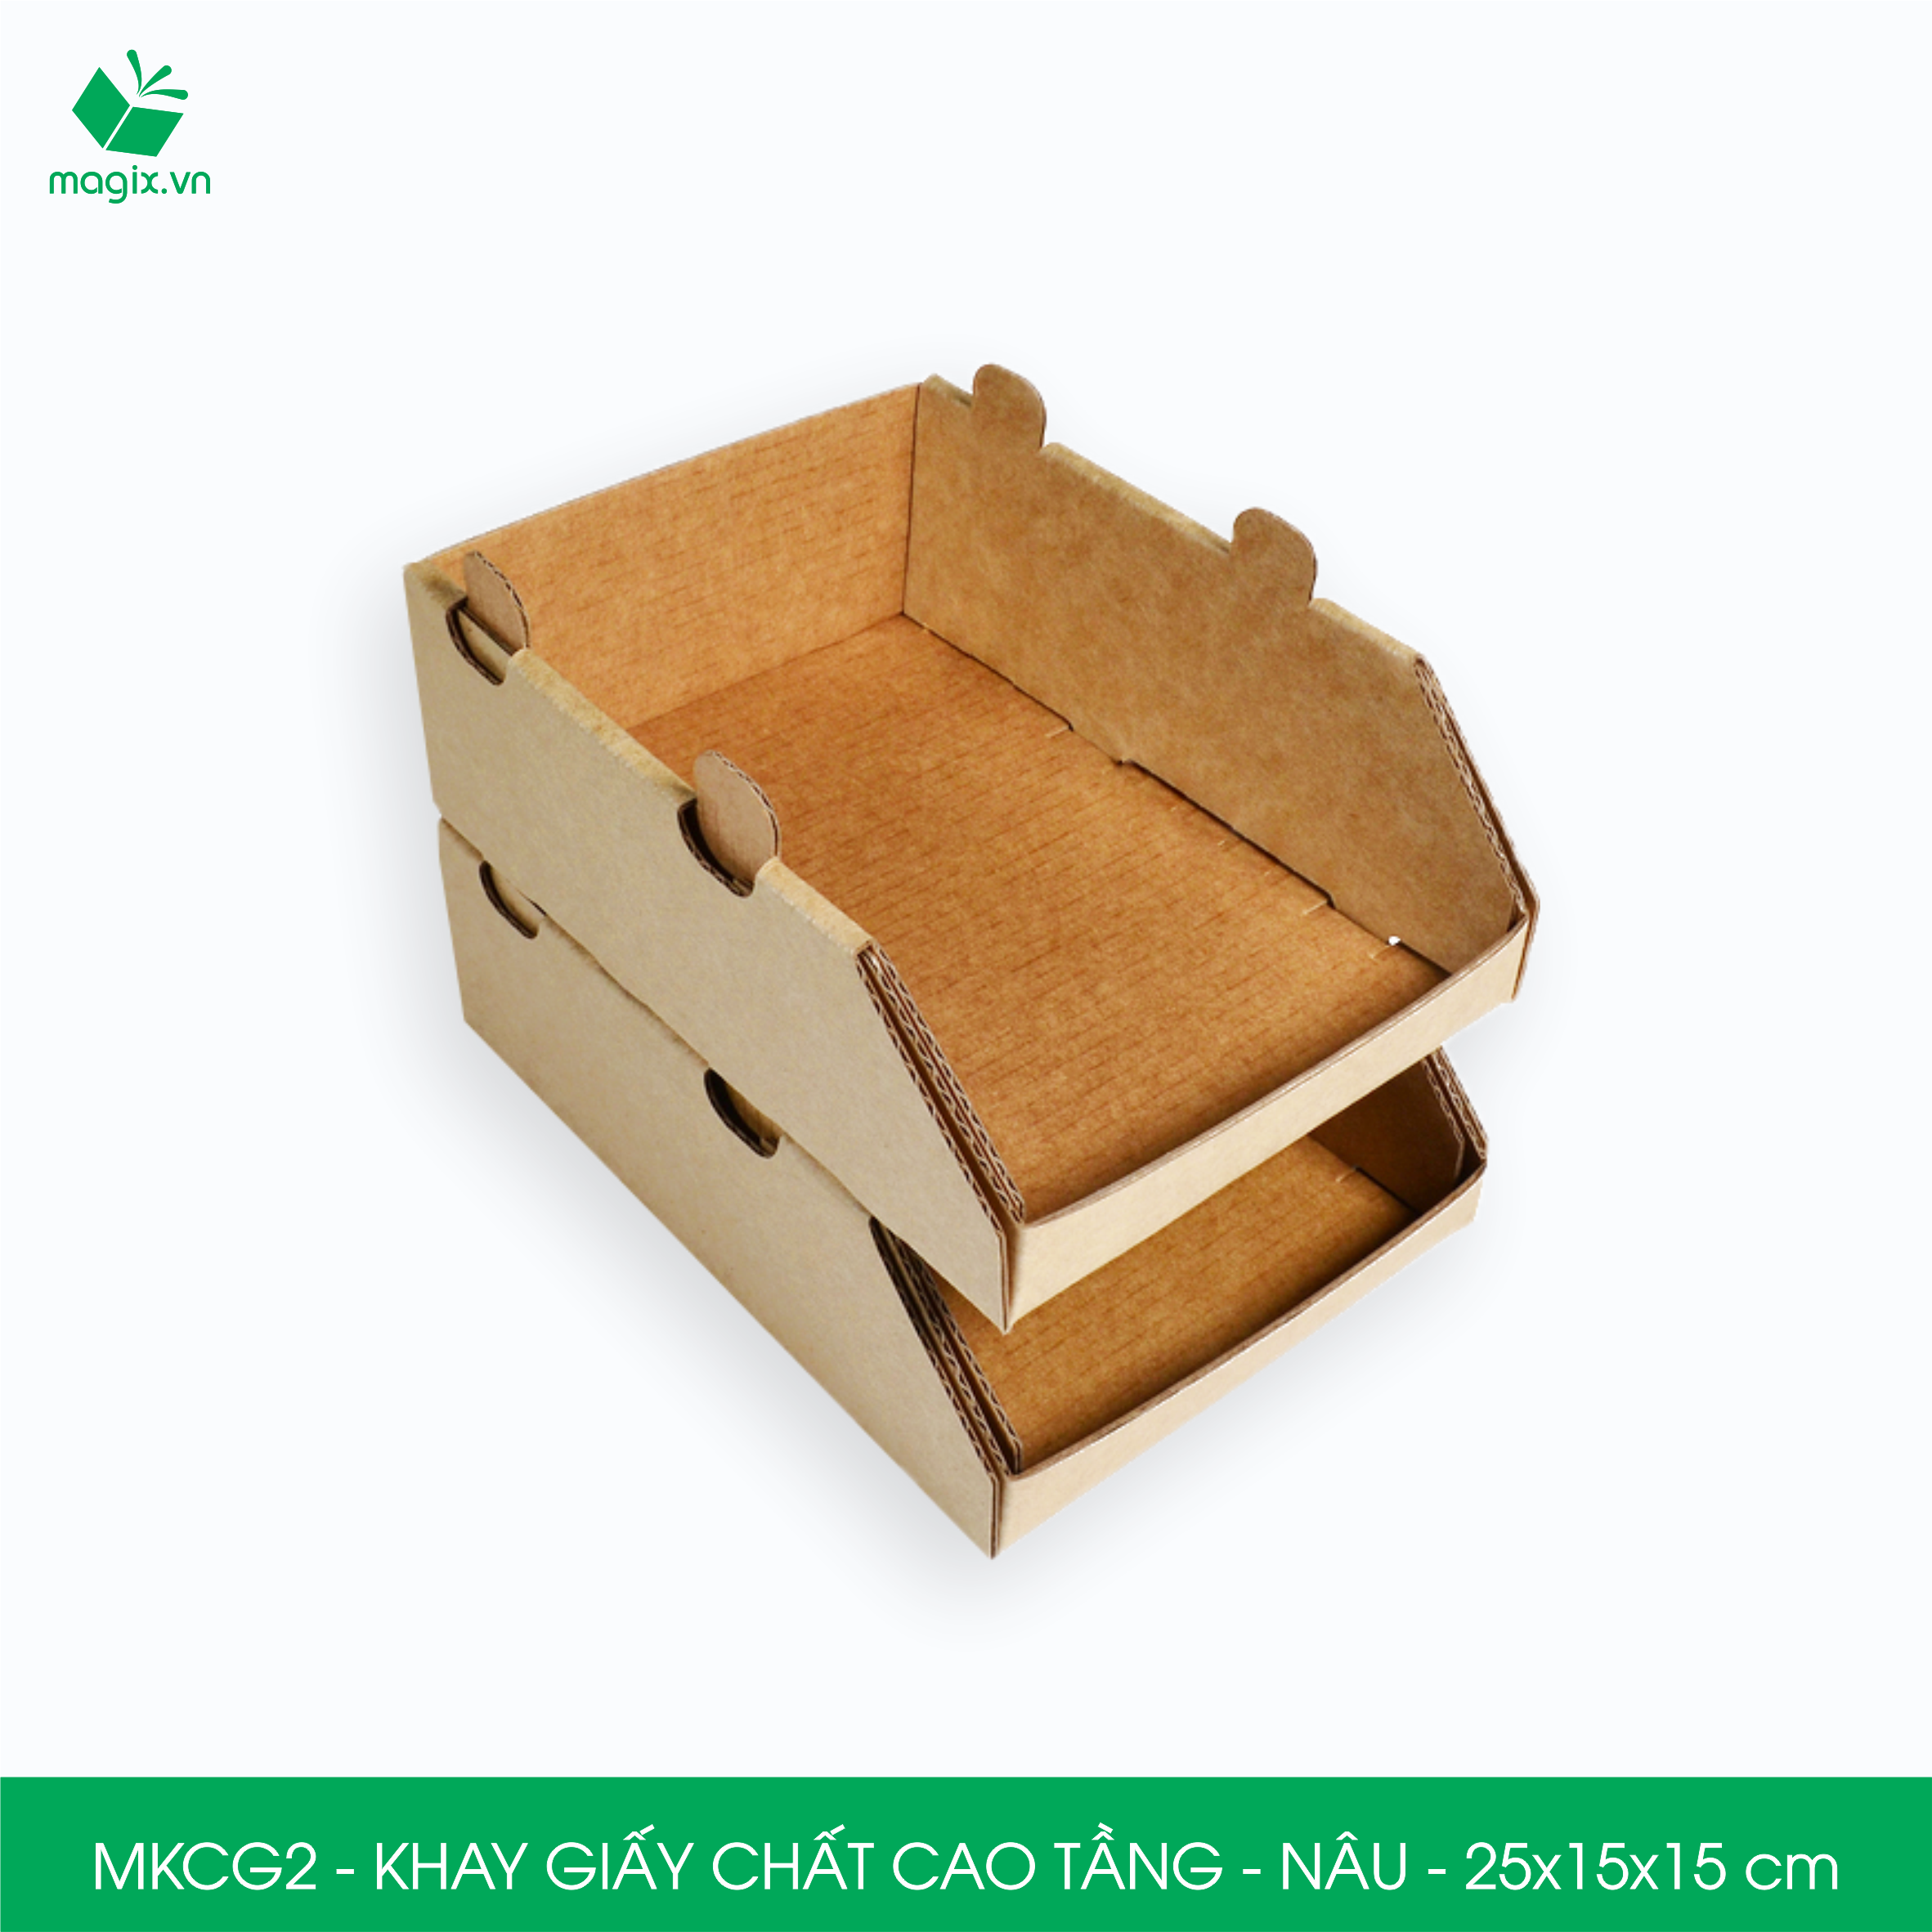 MKCG2 - 25x15x15 cm - 10 Khay giấy chất cao tầng bằng giấy carton siêu cứng, kệ giấy đựng đồ văn phòng, khay đựng dụng cụ, khay linh kiện, kệ phân loại dụng cụ